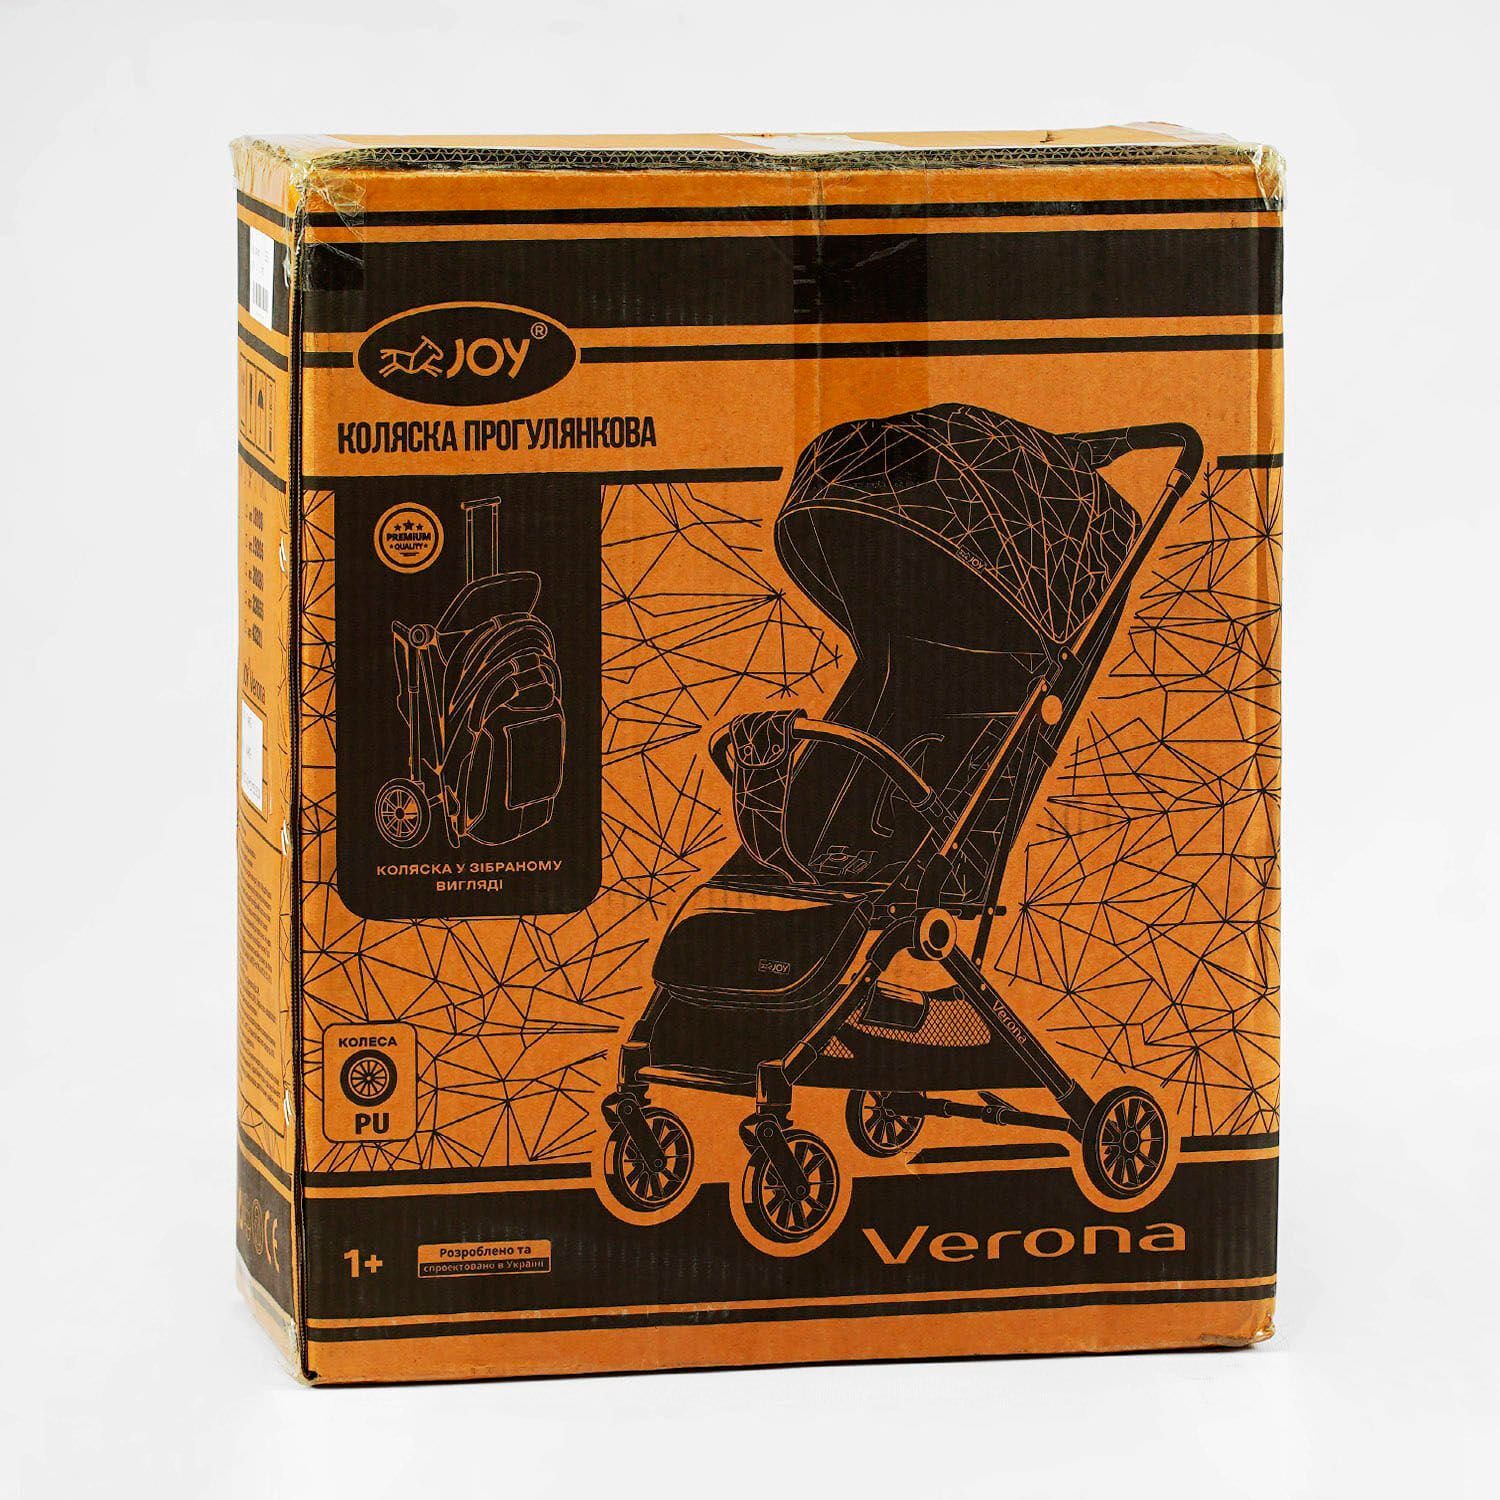 Коляска прогулочная детская "JOY" Verona (19205) рама стальная, футкавер, подстаканник, телескопическая ручка